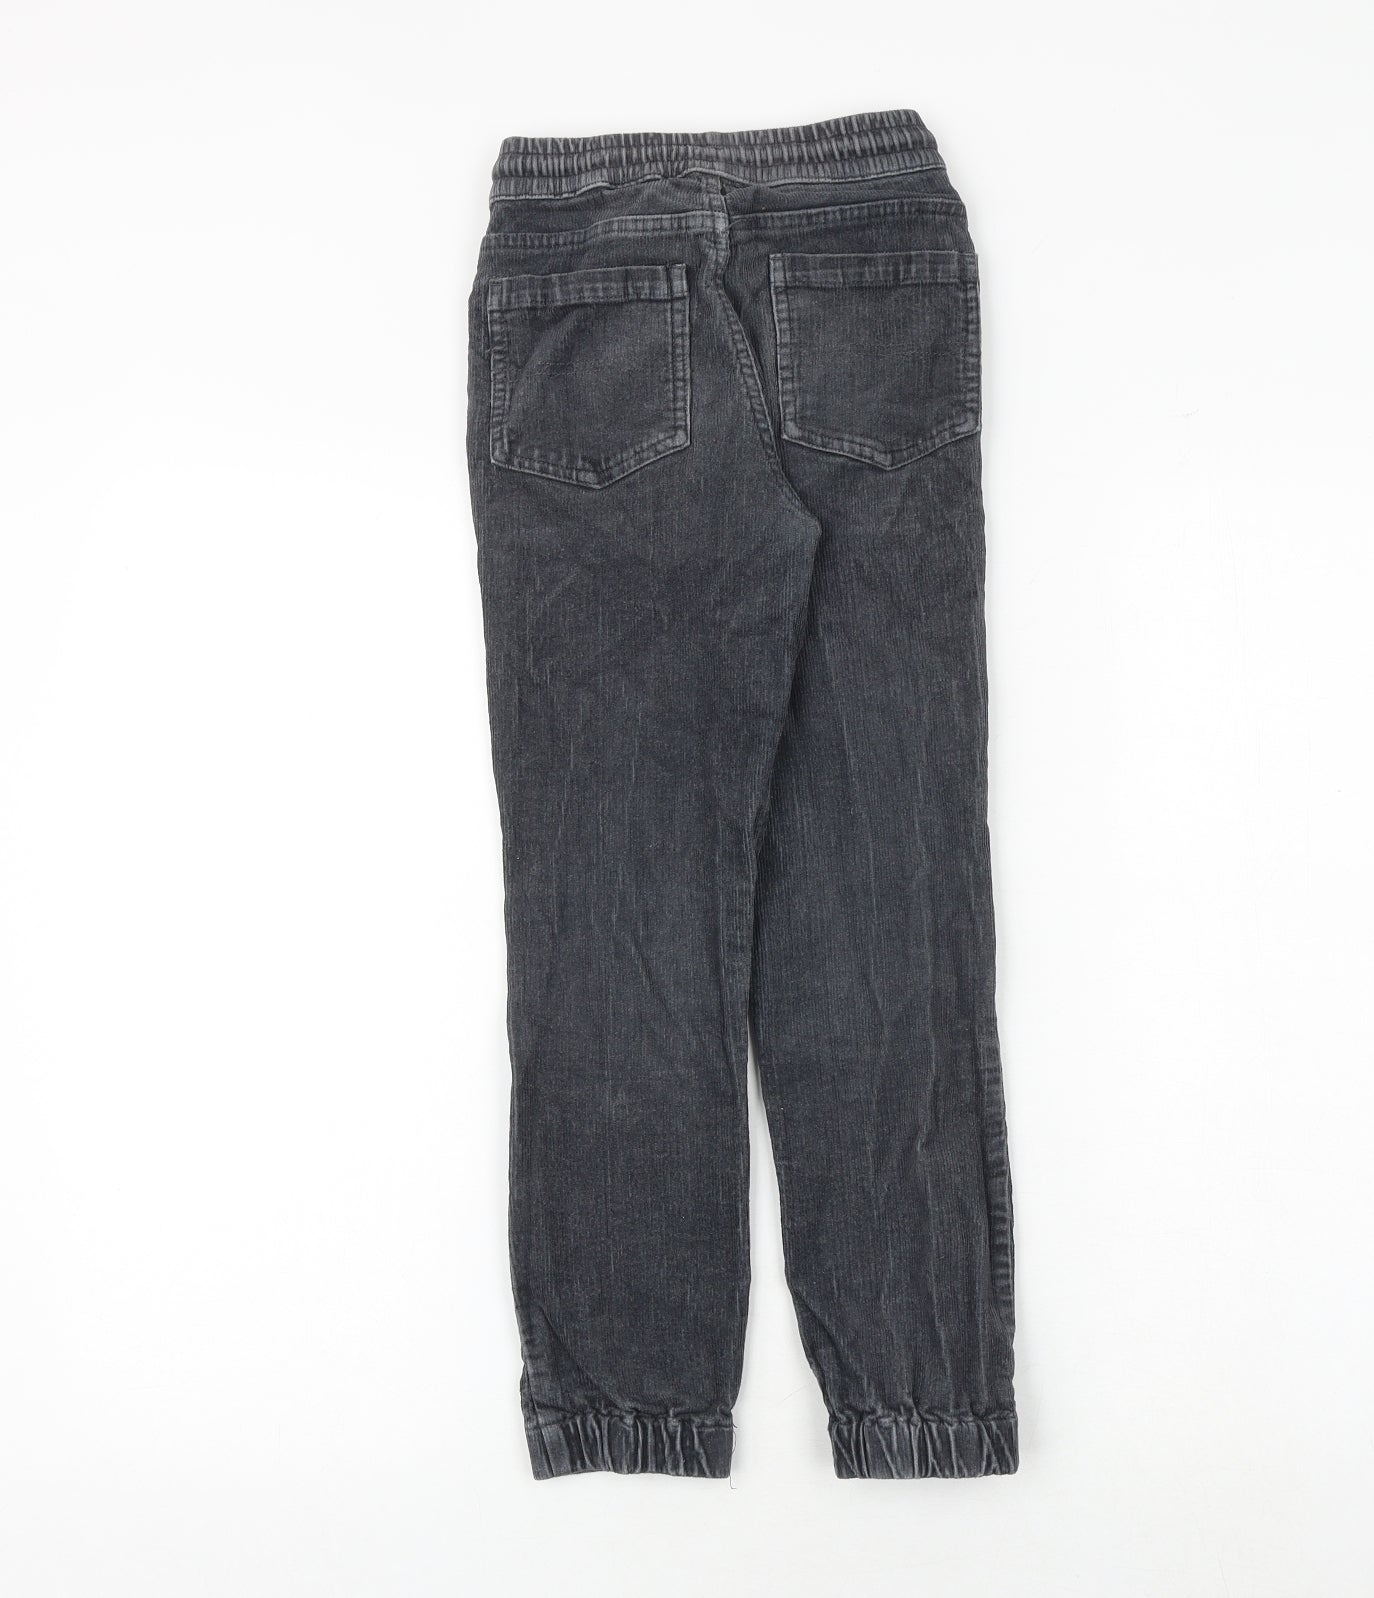 John Lewis Girls Grey 100% Cotton Jegging Trousers Size 9 Years Regular Drawstring